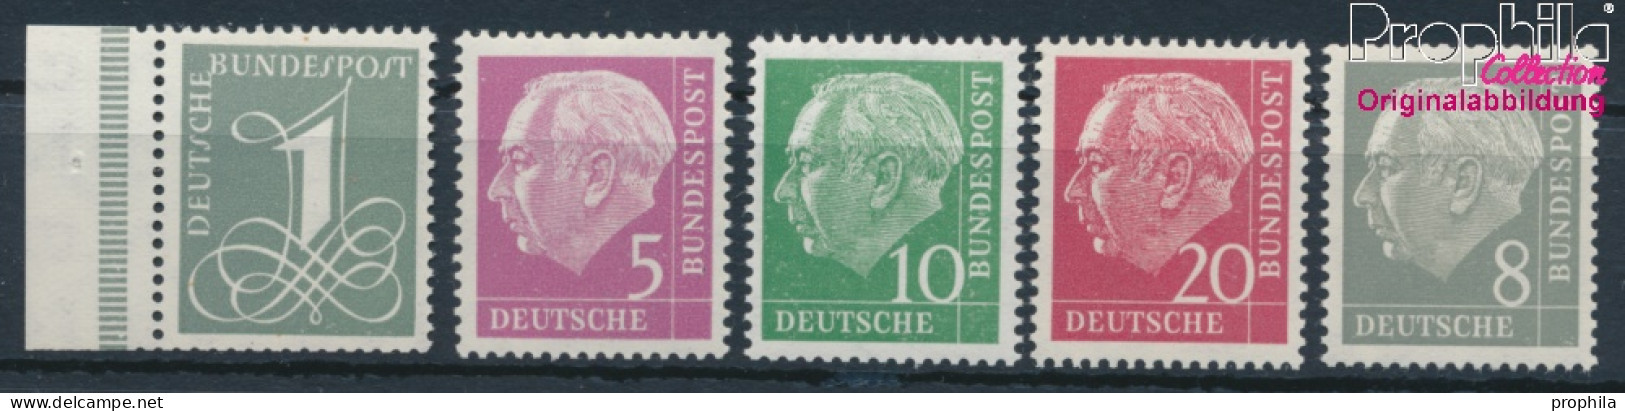 BRD 179Y,182Y,183Y,185Y,285Y (kompl.Ausg.) Liegendes Wasserzeichen Postfrisch 1960 Heuss I (10347827 - Ungebraucht